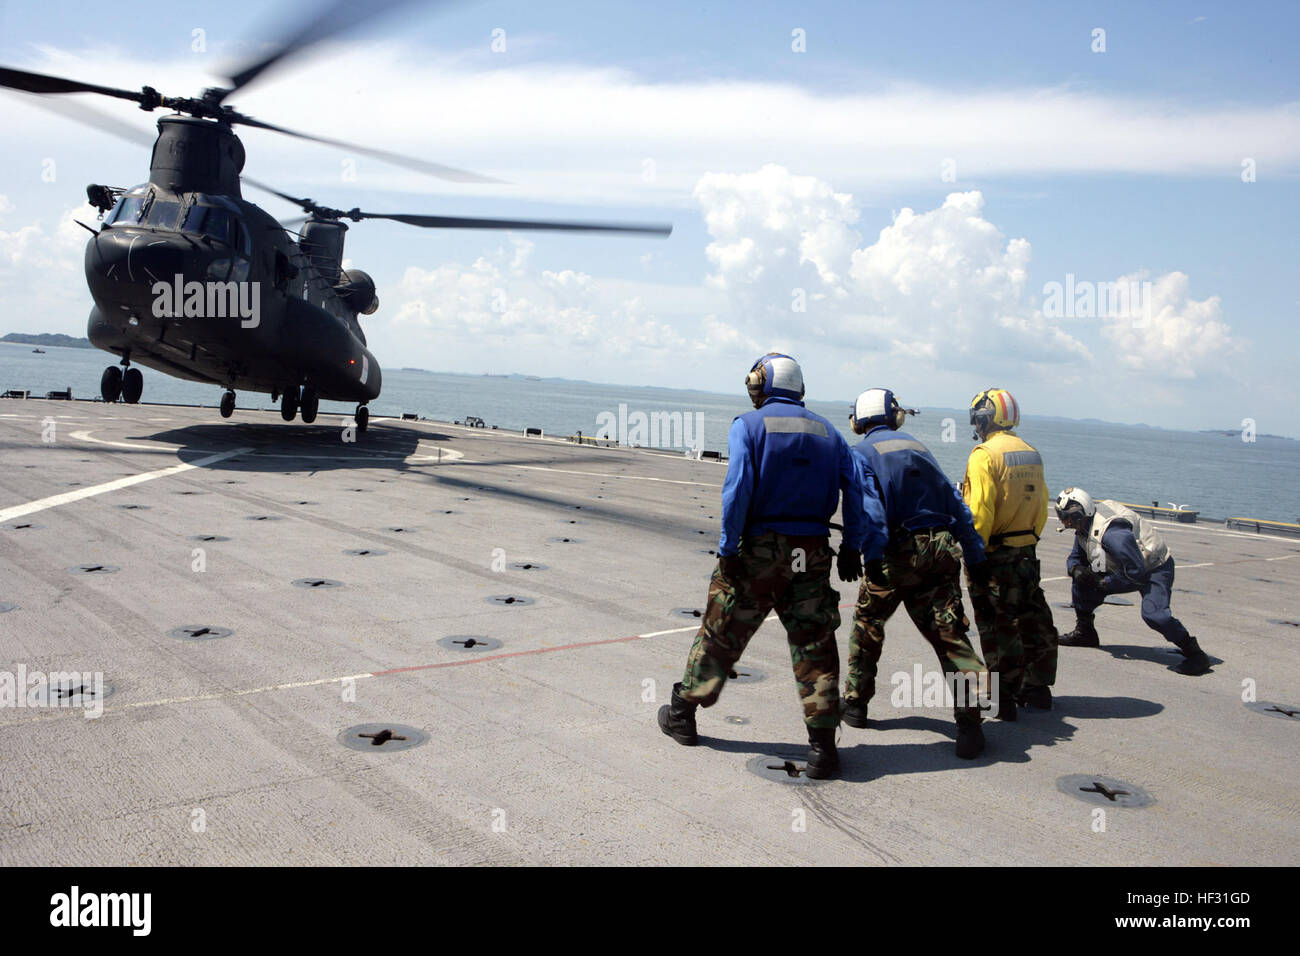 090611-M-0353S-028 rettilinei DI SINGAPORE (11 giugno 2009) una repubblica di Singapore Air Force CH-47 elicottero Chinook solleva mentre si conduce a bordo di formazione di atterraggio sul ponte di volo del dock anfibio sbarco nave USS harpers Ferry (LSD 49). La formazione è parte dell'a-mare fase di cooperazione a galla la prontezza e la formazione (Carati) 2009. Carato è una serie annuale di marittimi bilaterali esercizi di formazione tra gli Stati Uniti e il sud-est asiatico unite progettate per migliorare la disponibilità operativa di partecipazione delle forze. (U.S. Marine Corps foto dal caporale Dustin T. Scha Foto Stock